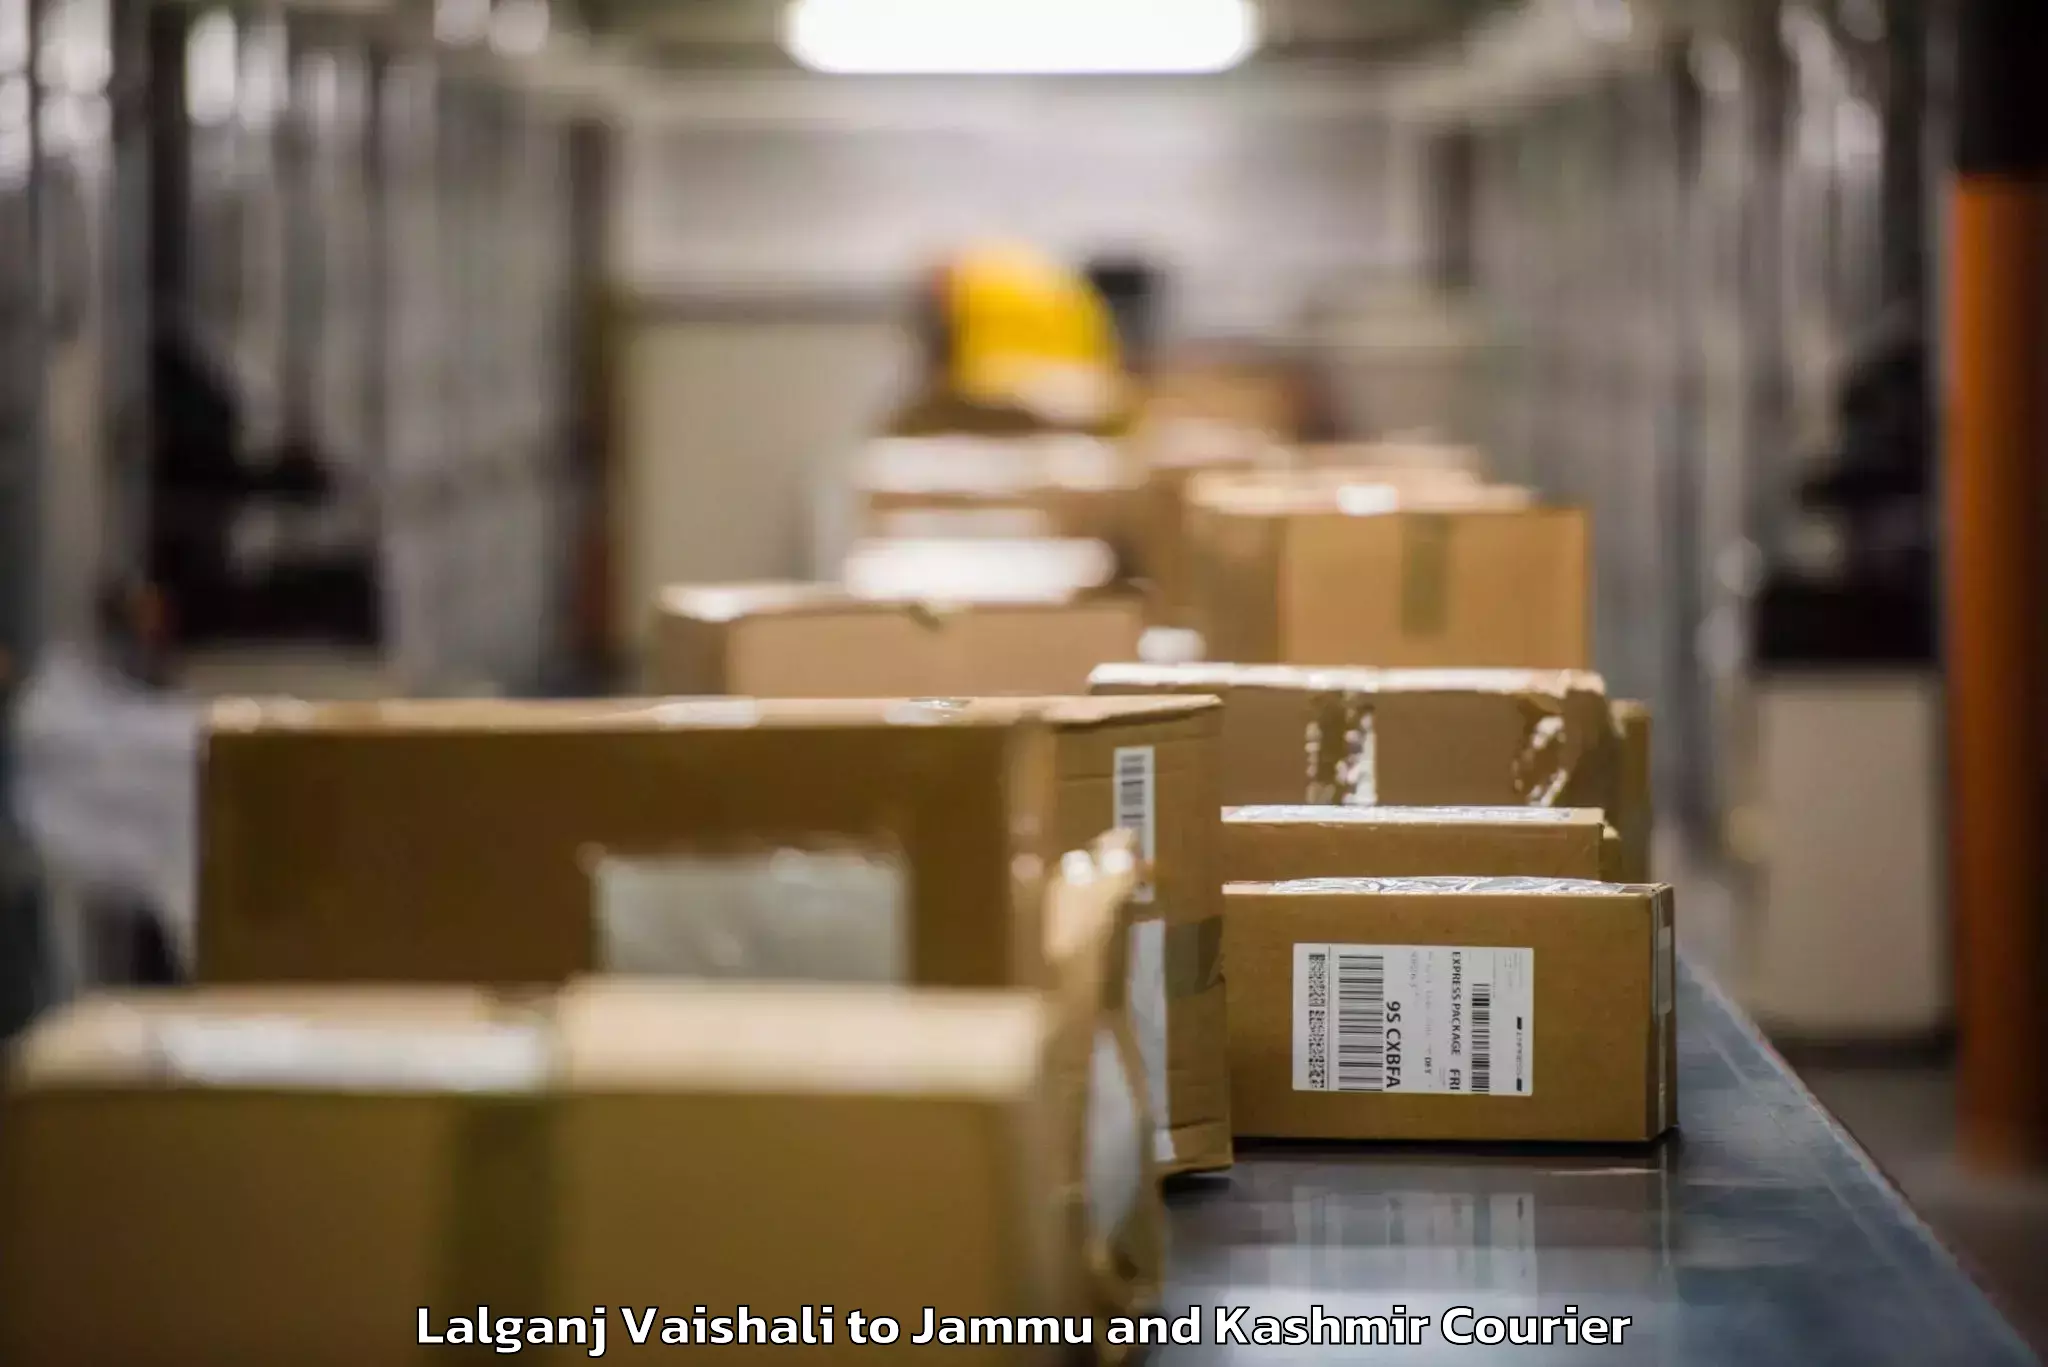 Luggage delivery system Lalganj Vaishali to IIT Jammu